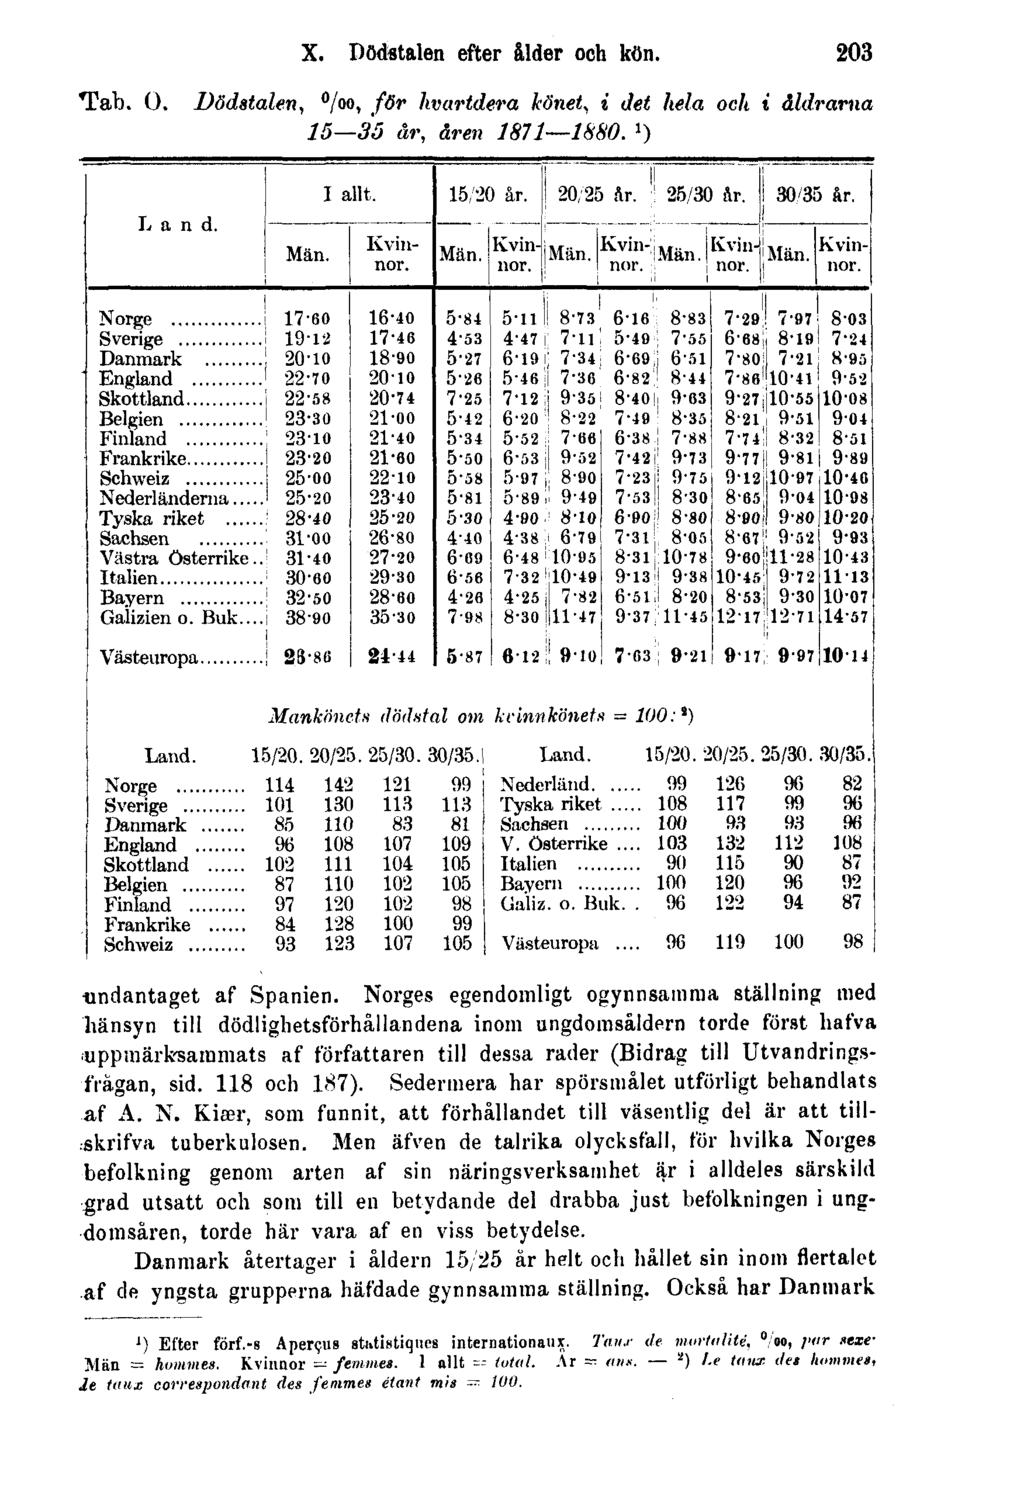 Tab. O. Dödstalen, X. Dödstalen efter ålder och kön. 203 0 / 00, för hvartdera könet, i det hela och i åldrarna 15 35 år, åren 1871 1880. 1 ) undantaget af Spanien.